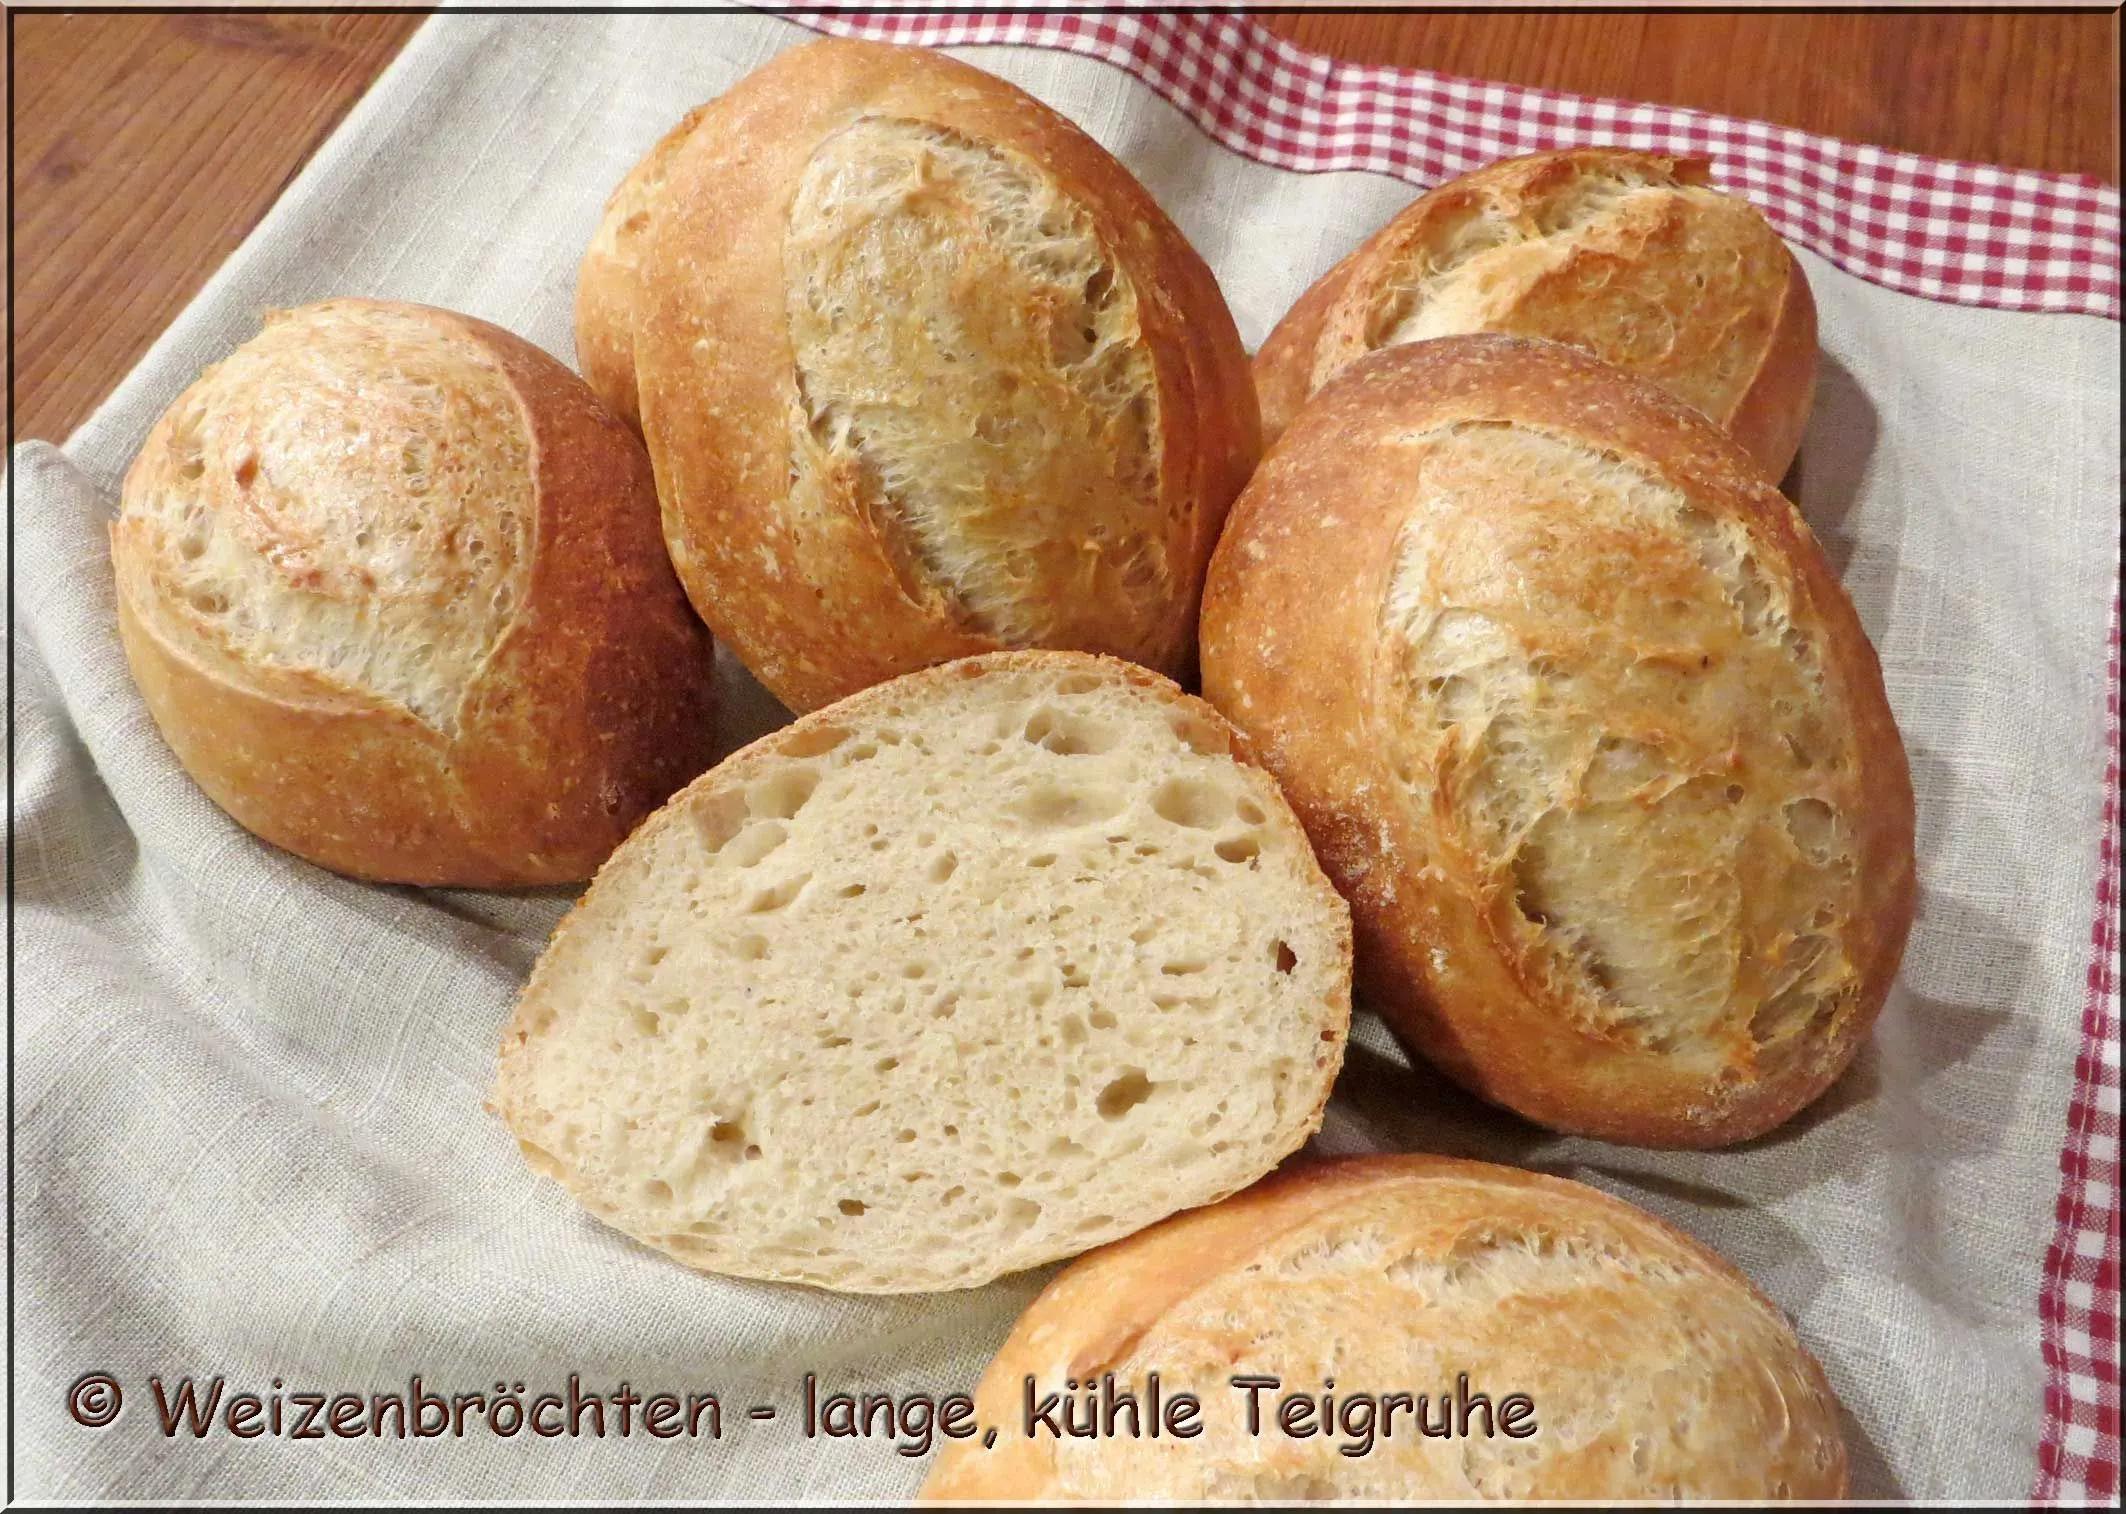 Weizenbrötchen- lange, kühle Teigruhe Brot, Food Food